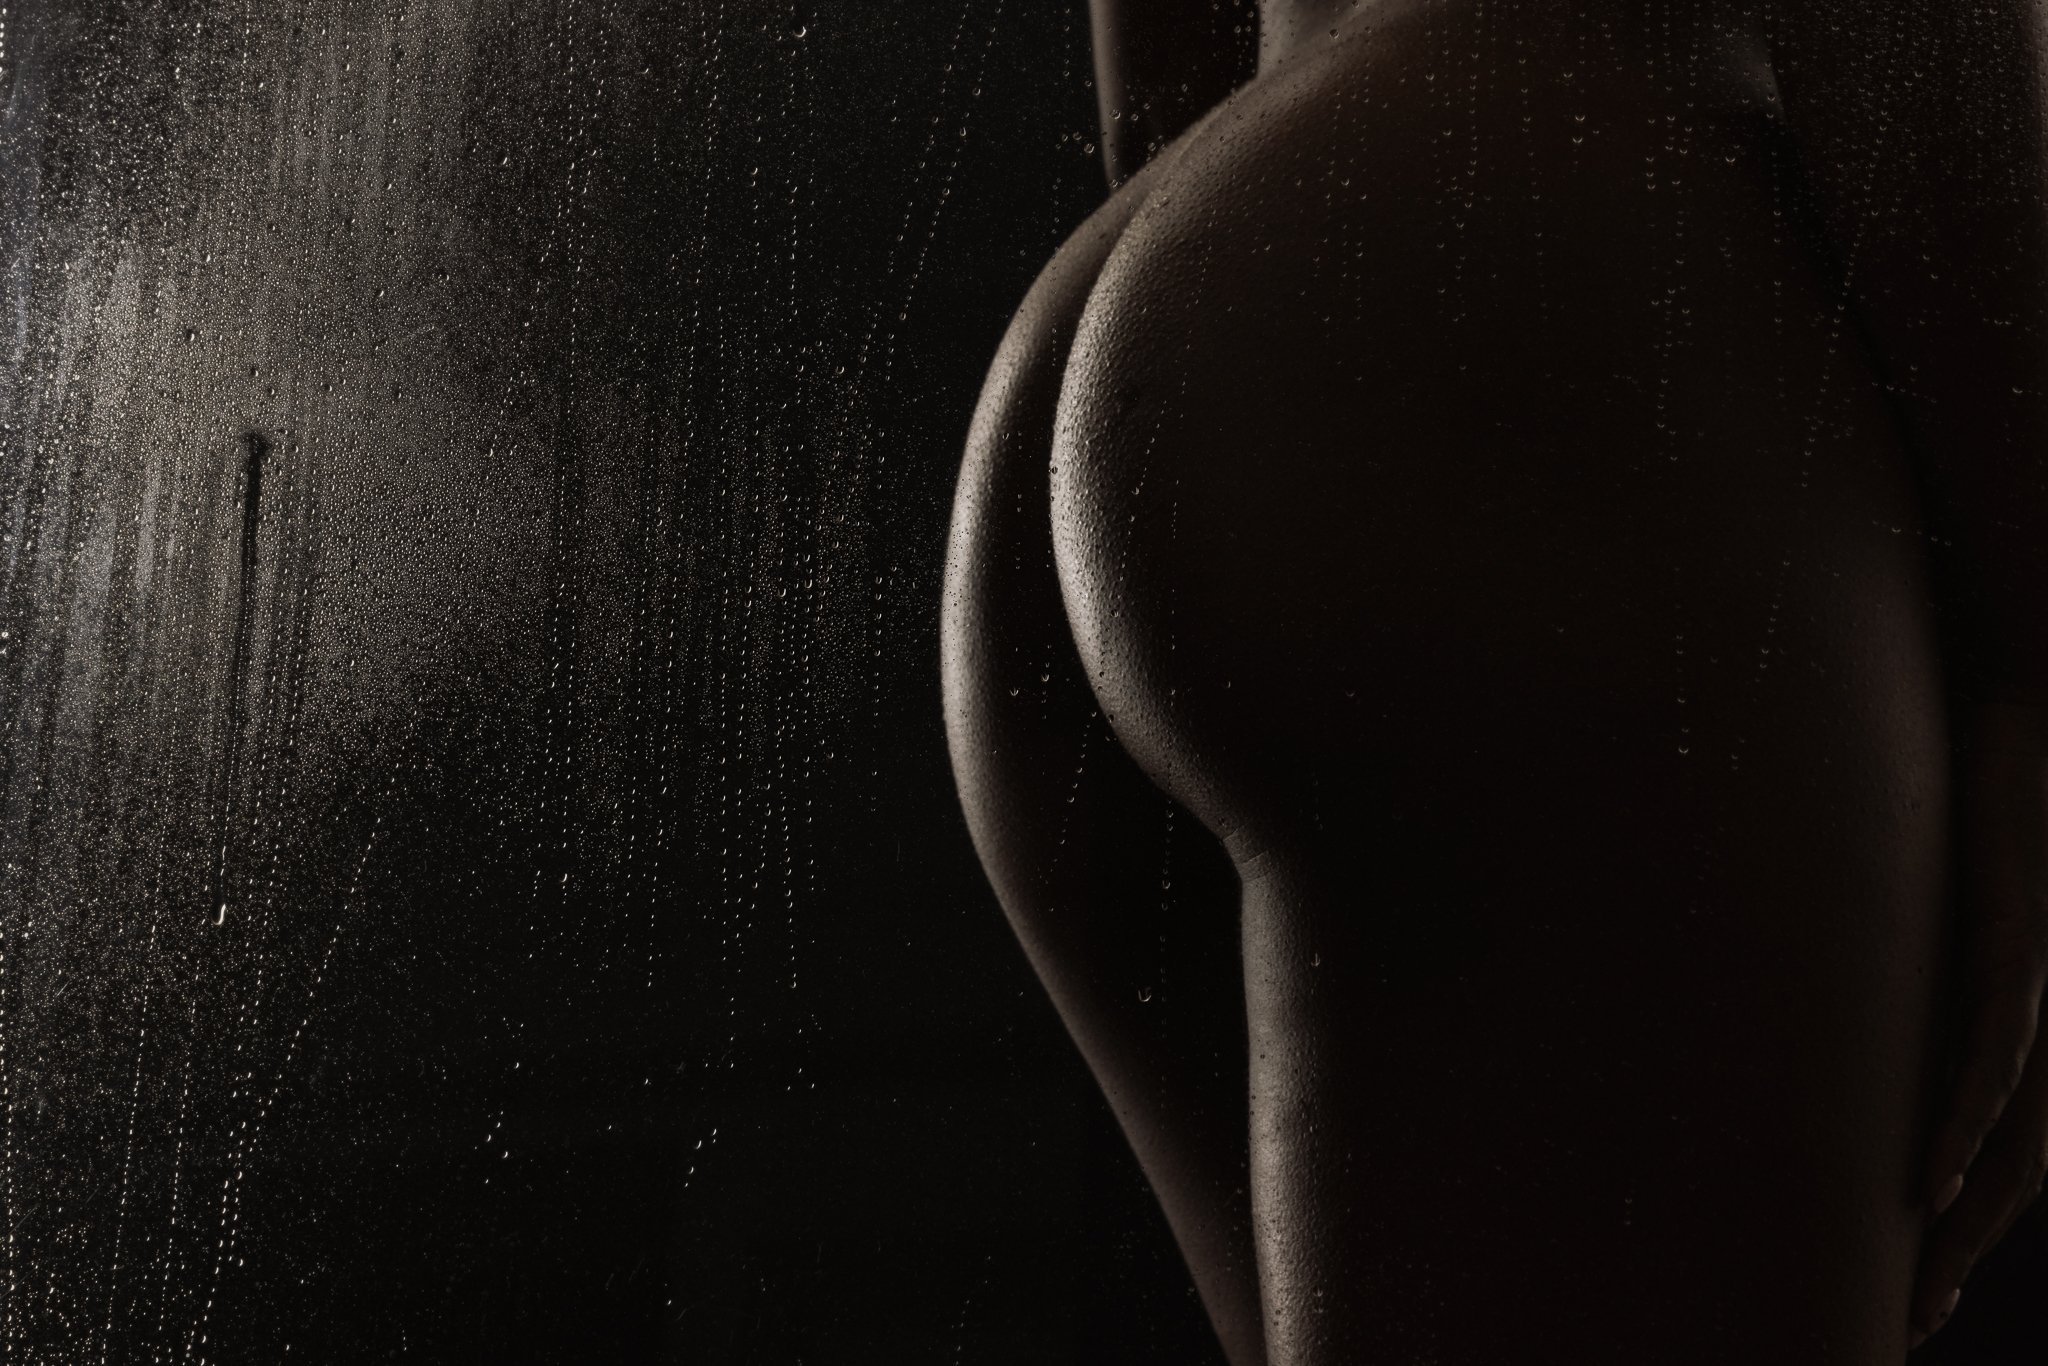 Shower boudoir photo of a curvy butt